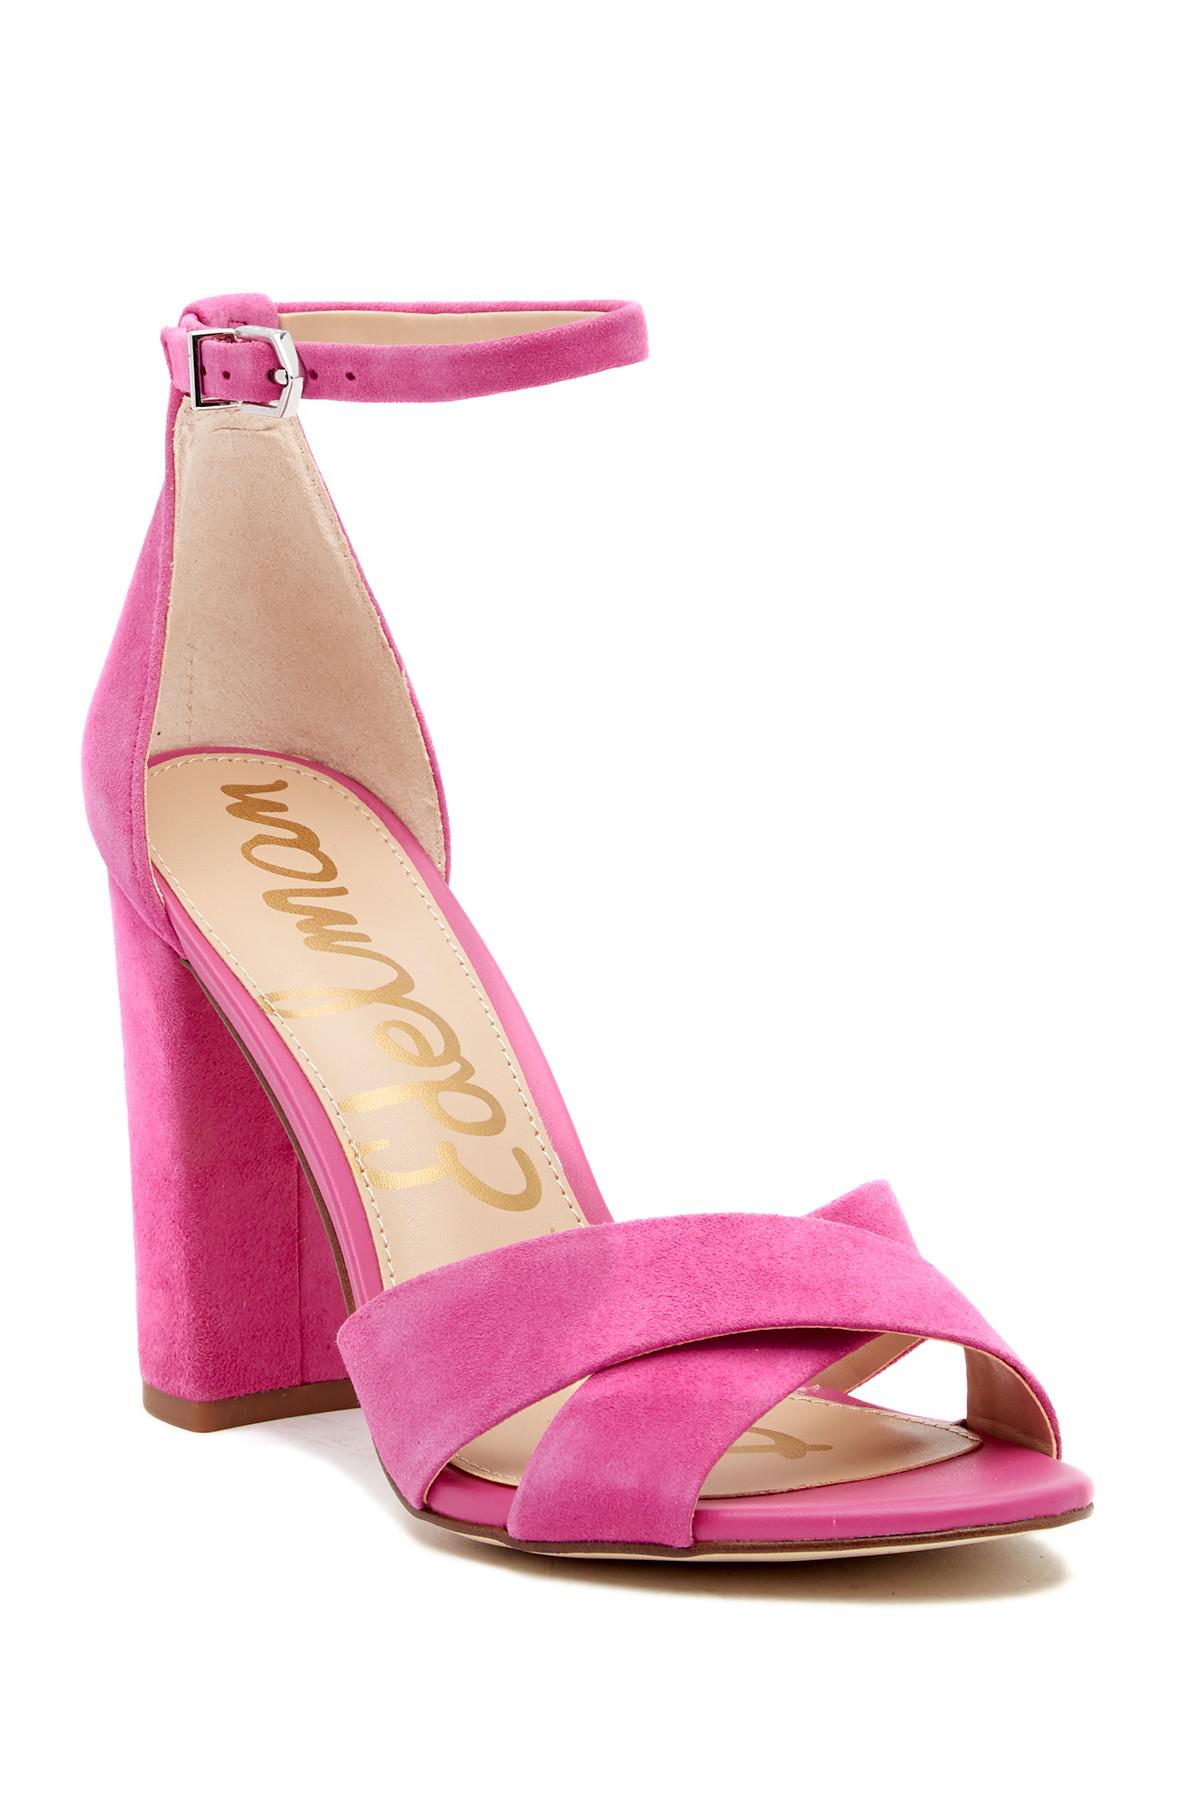 sam edelman hot pink sandals